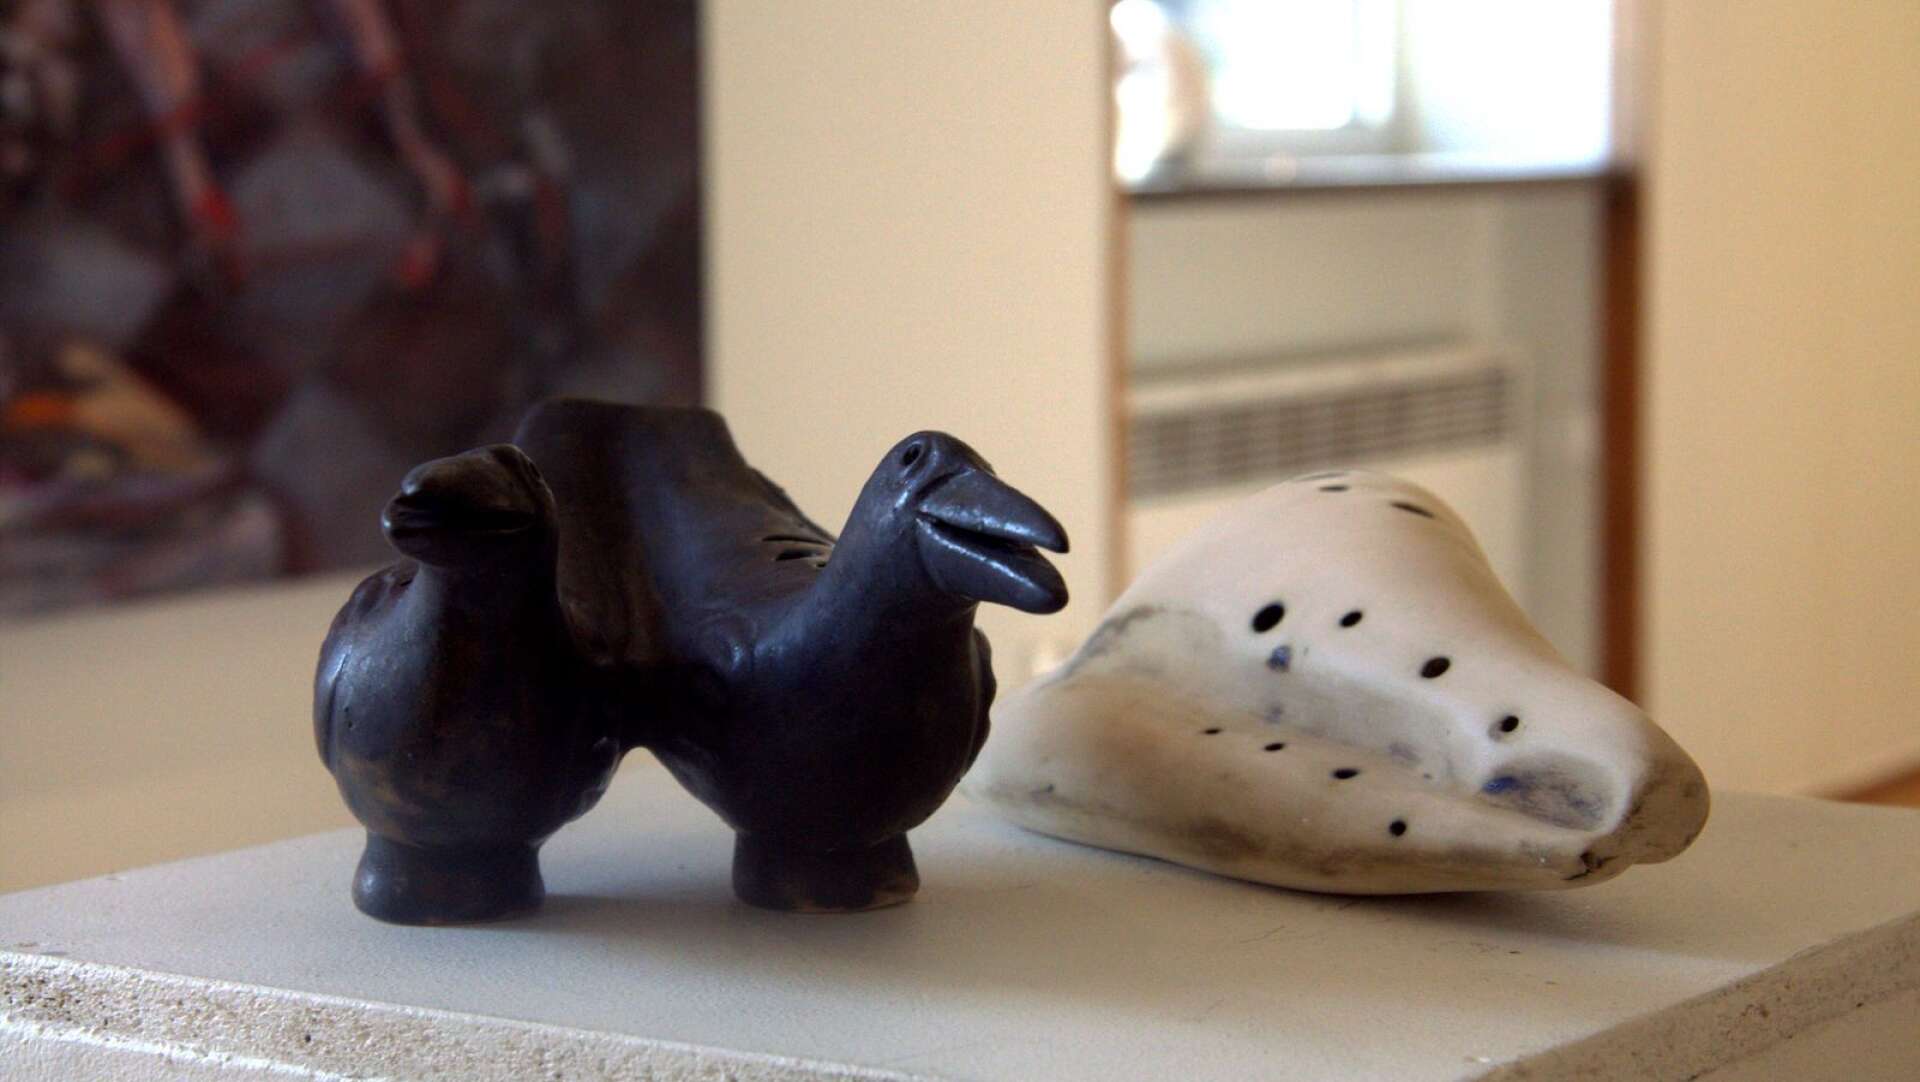 Dag Hultcrantz ställde ut ett flertal okarionor, blåsinstrument i keramik. Det stulna föremålet var svart och var värt 1 200 kronor.